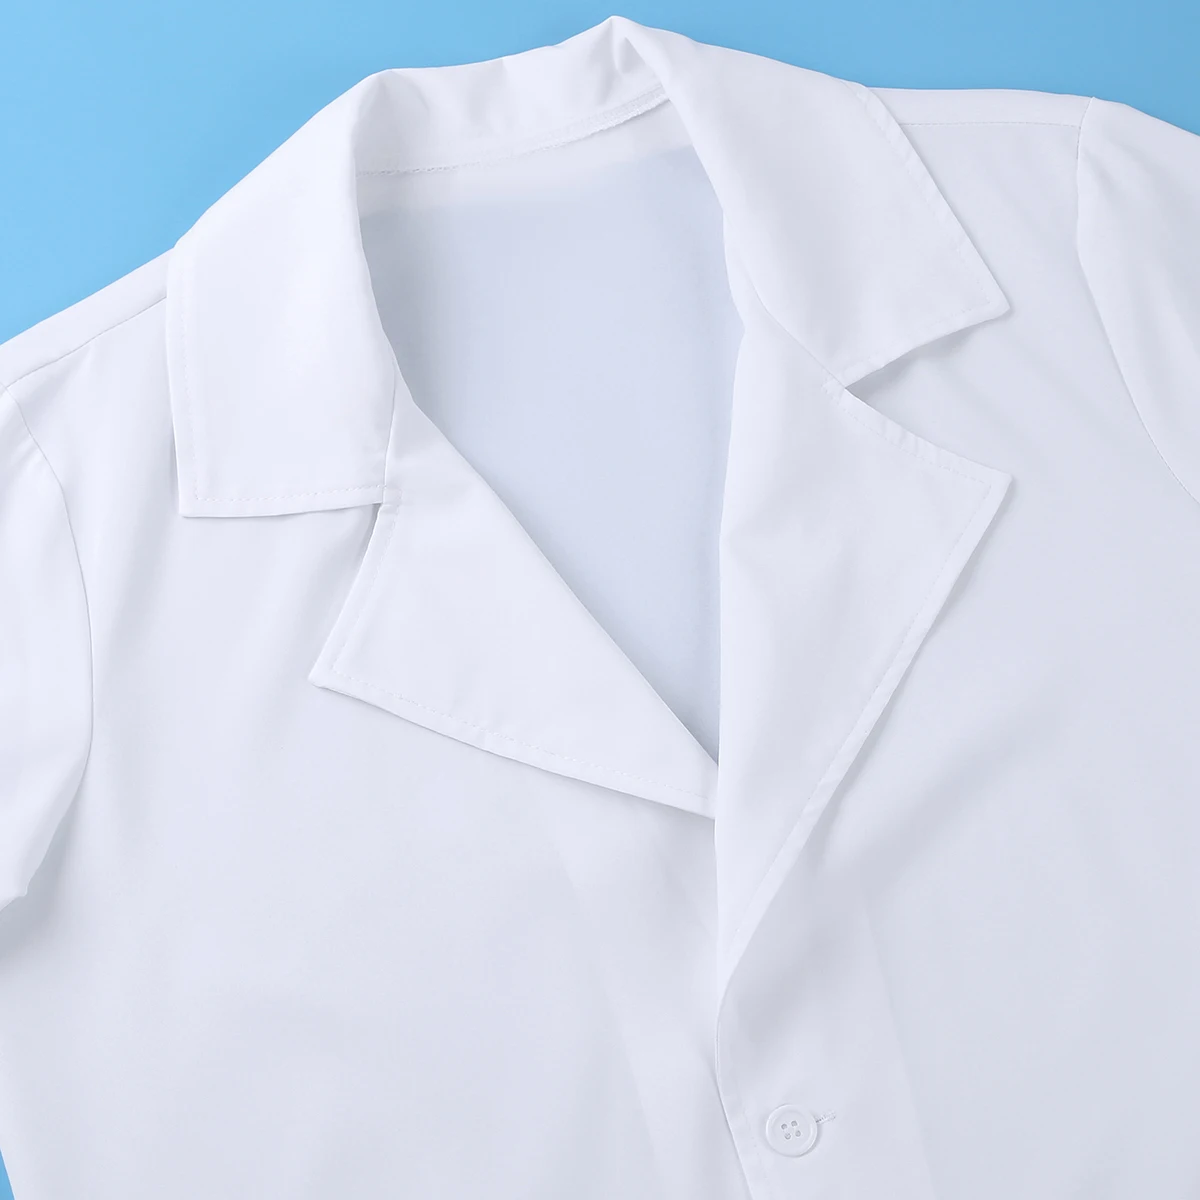 Сексуальный костюм для Хэллоуина мужские доктор игра в медсестру эротическая форма наряд белое пальто с трусов-боксеров Сисси Косплэй сексуальное нижнее белье для женщин